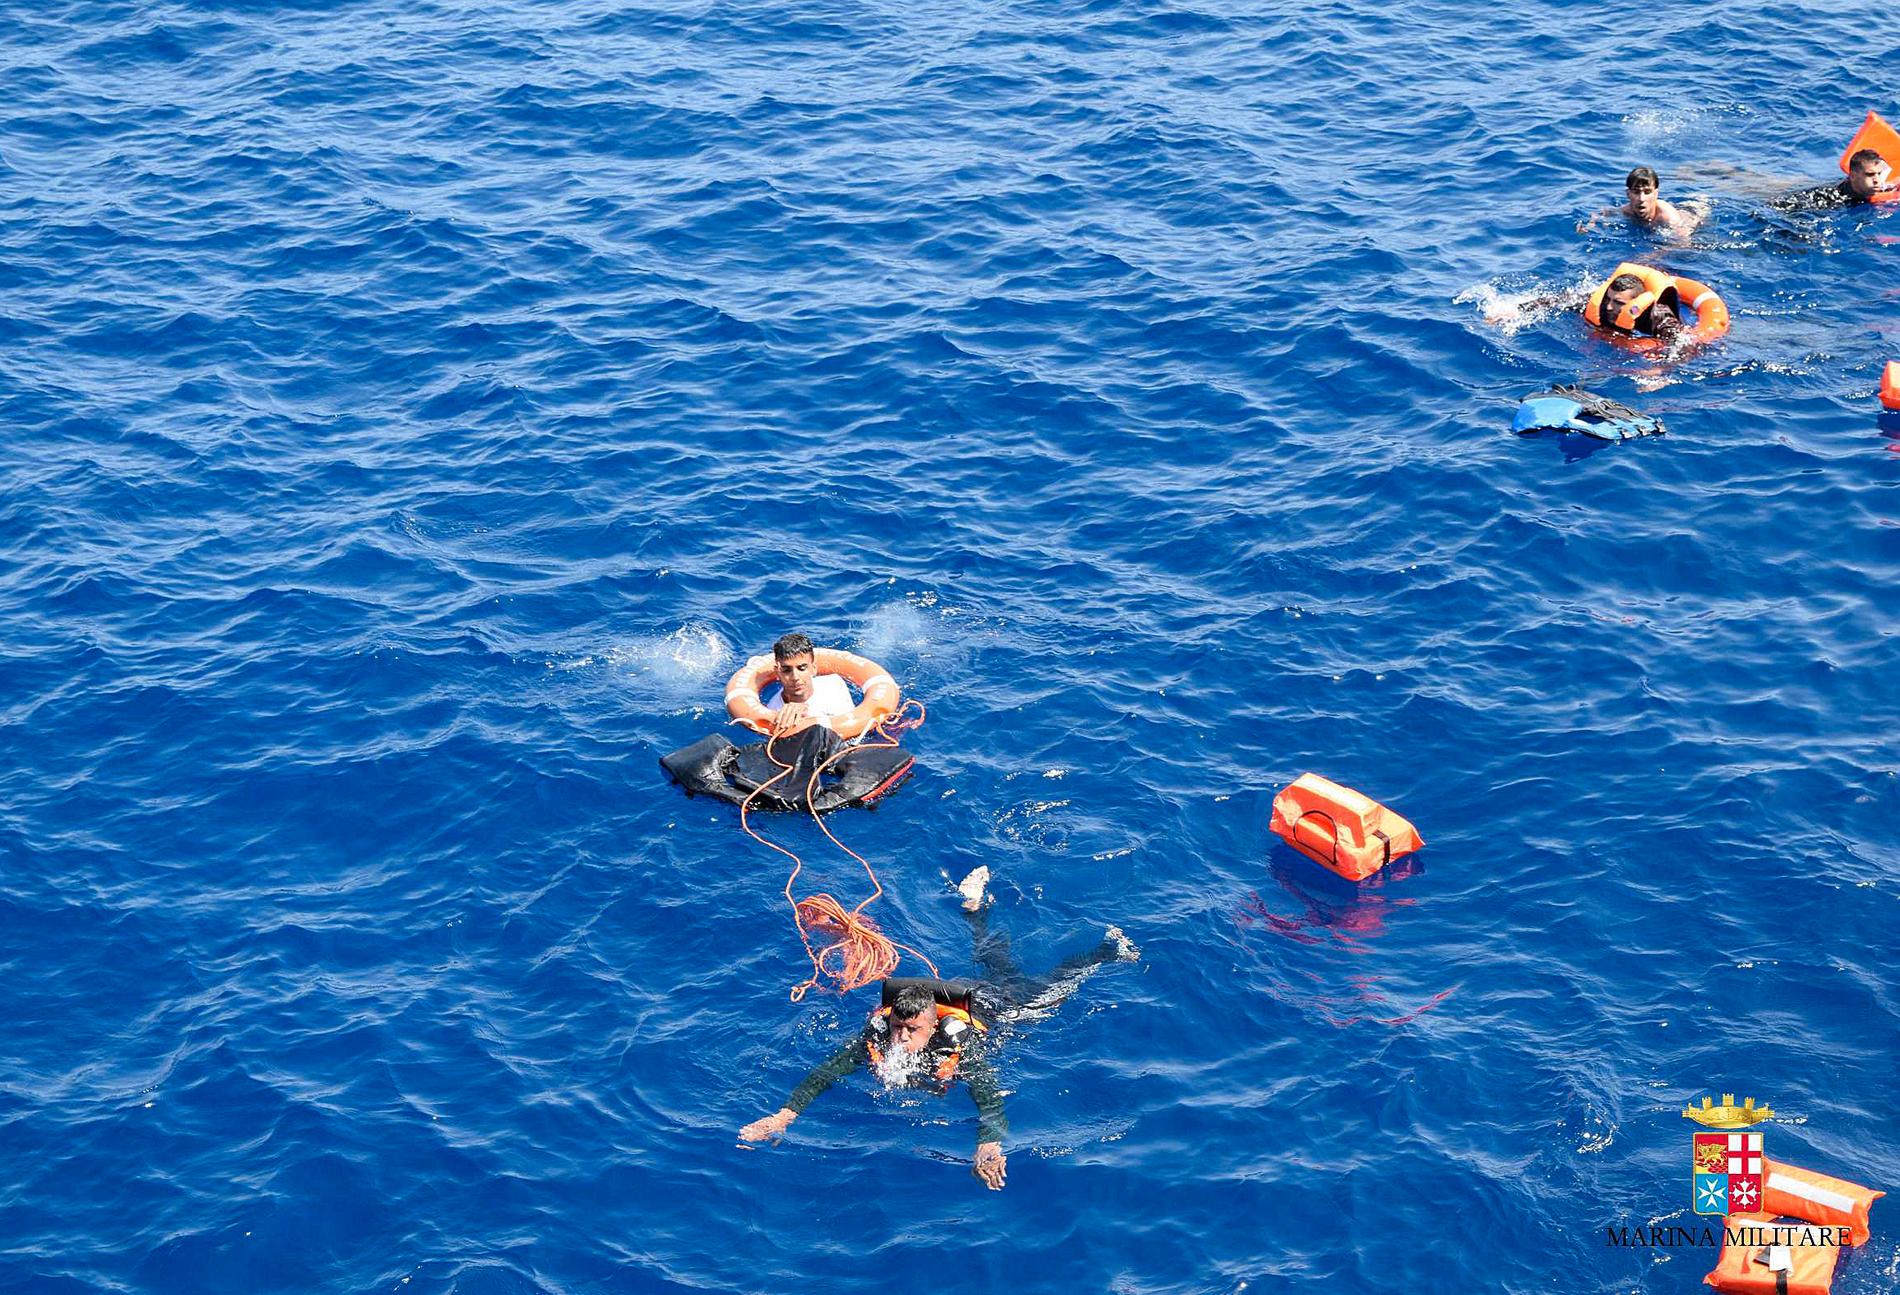 Minst sju migranter har drunknat utanför Libyens kust sedan en överfylld båt kantrat och sjunkit.